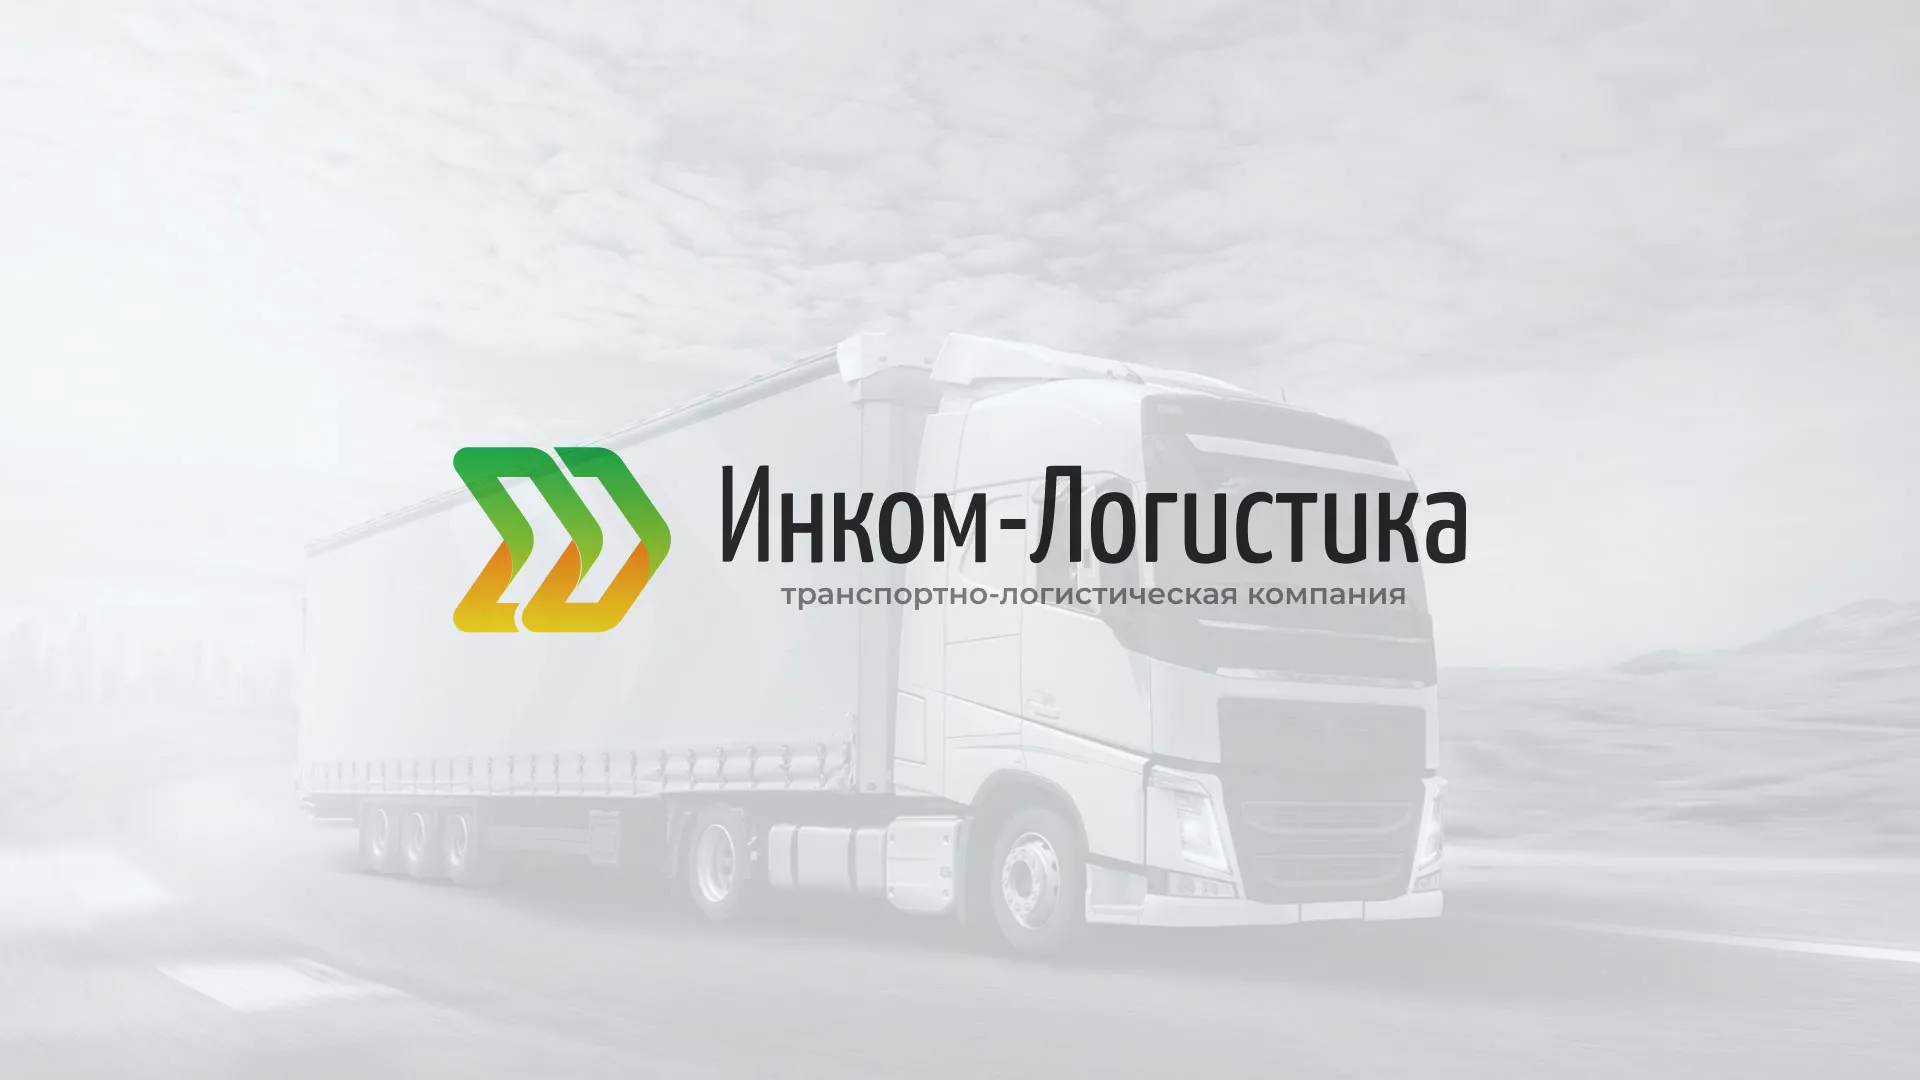 Разработка логотипа и сайта компании «Инком-Логистика» в Гулькевичах